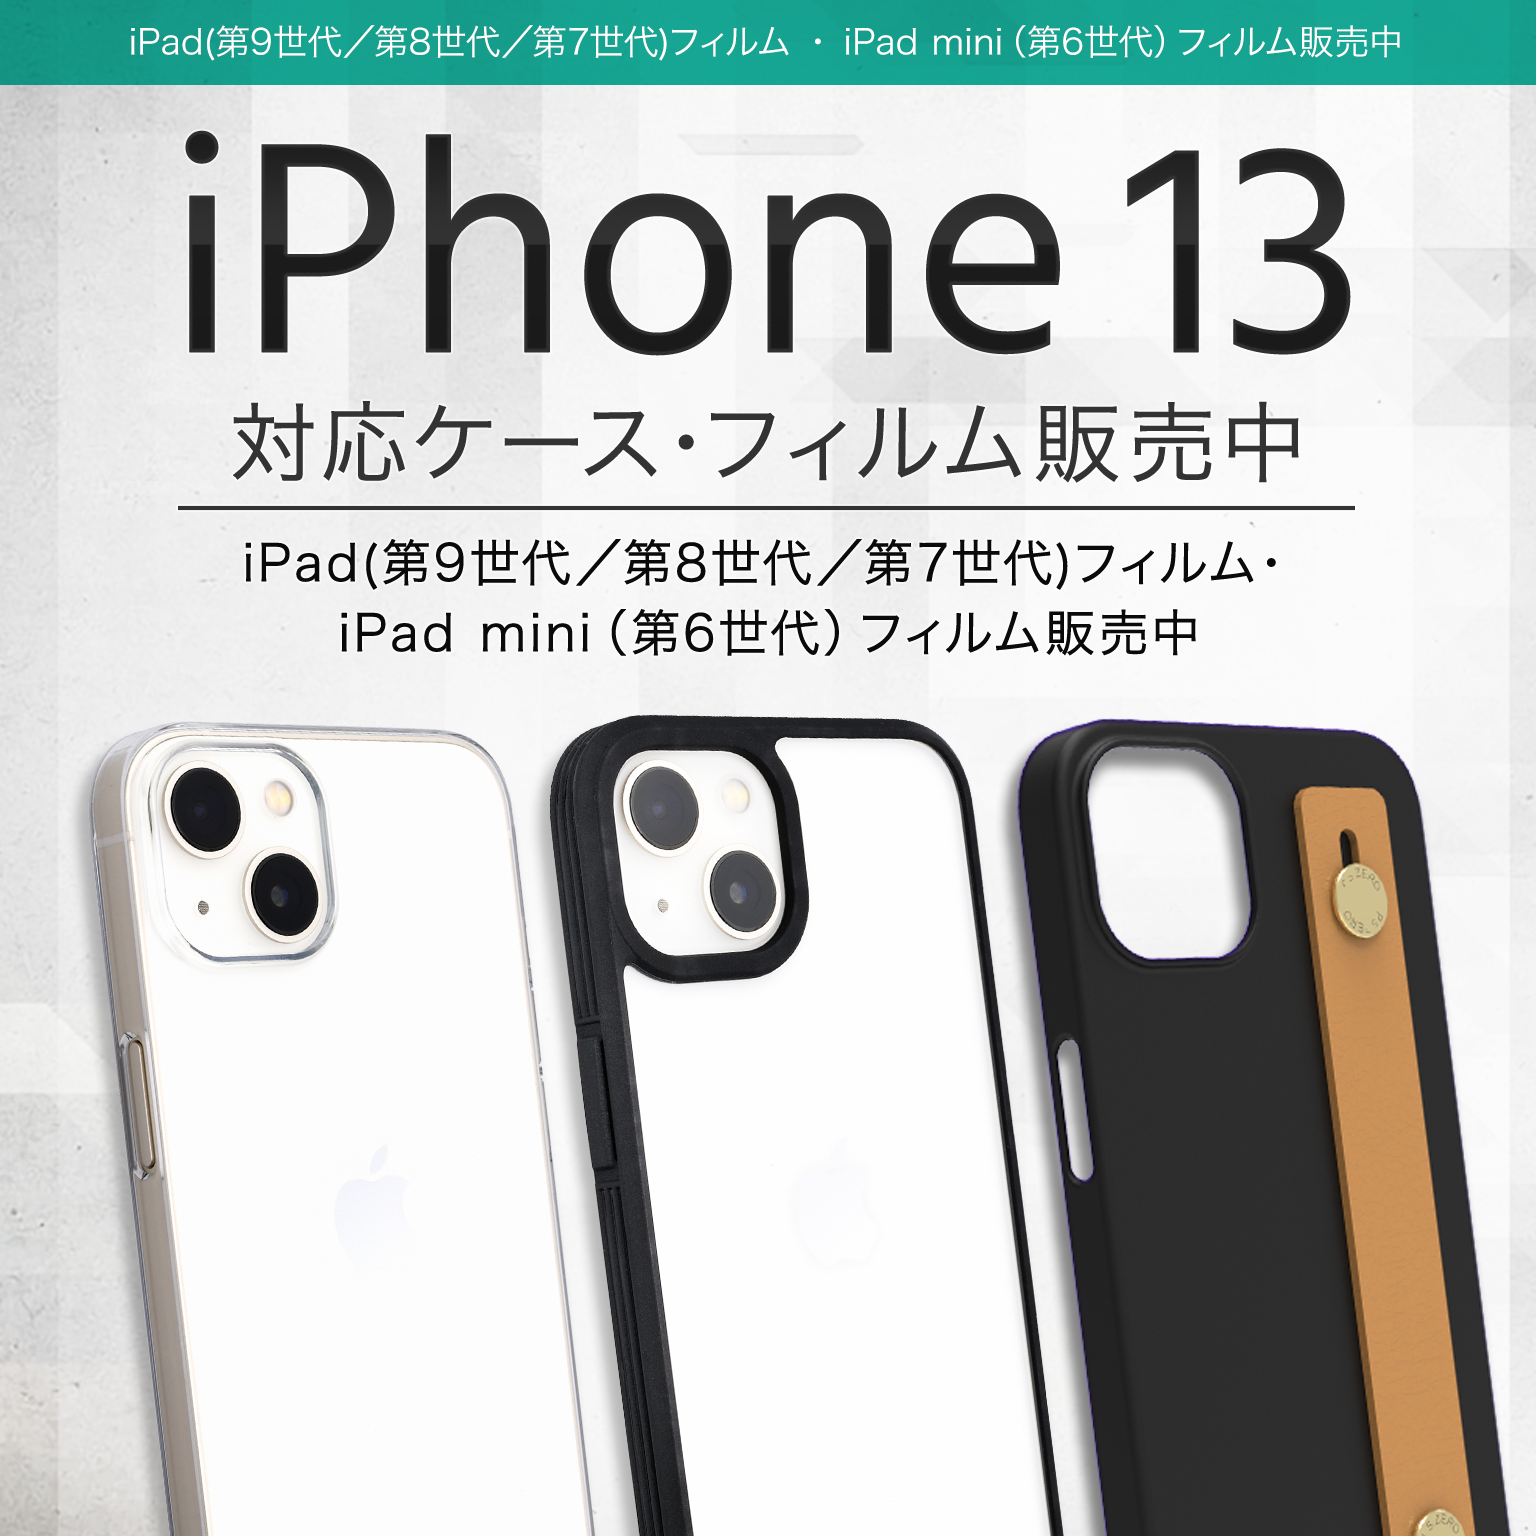 Iphone 13シリーズ Ipad対応 ケース 液晶保護フィルム販売開始 パワーサポート